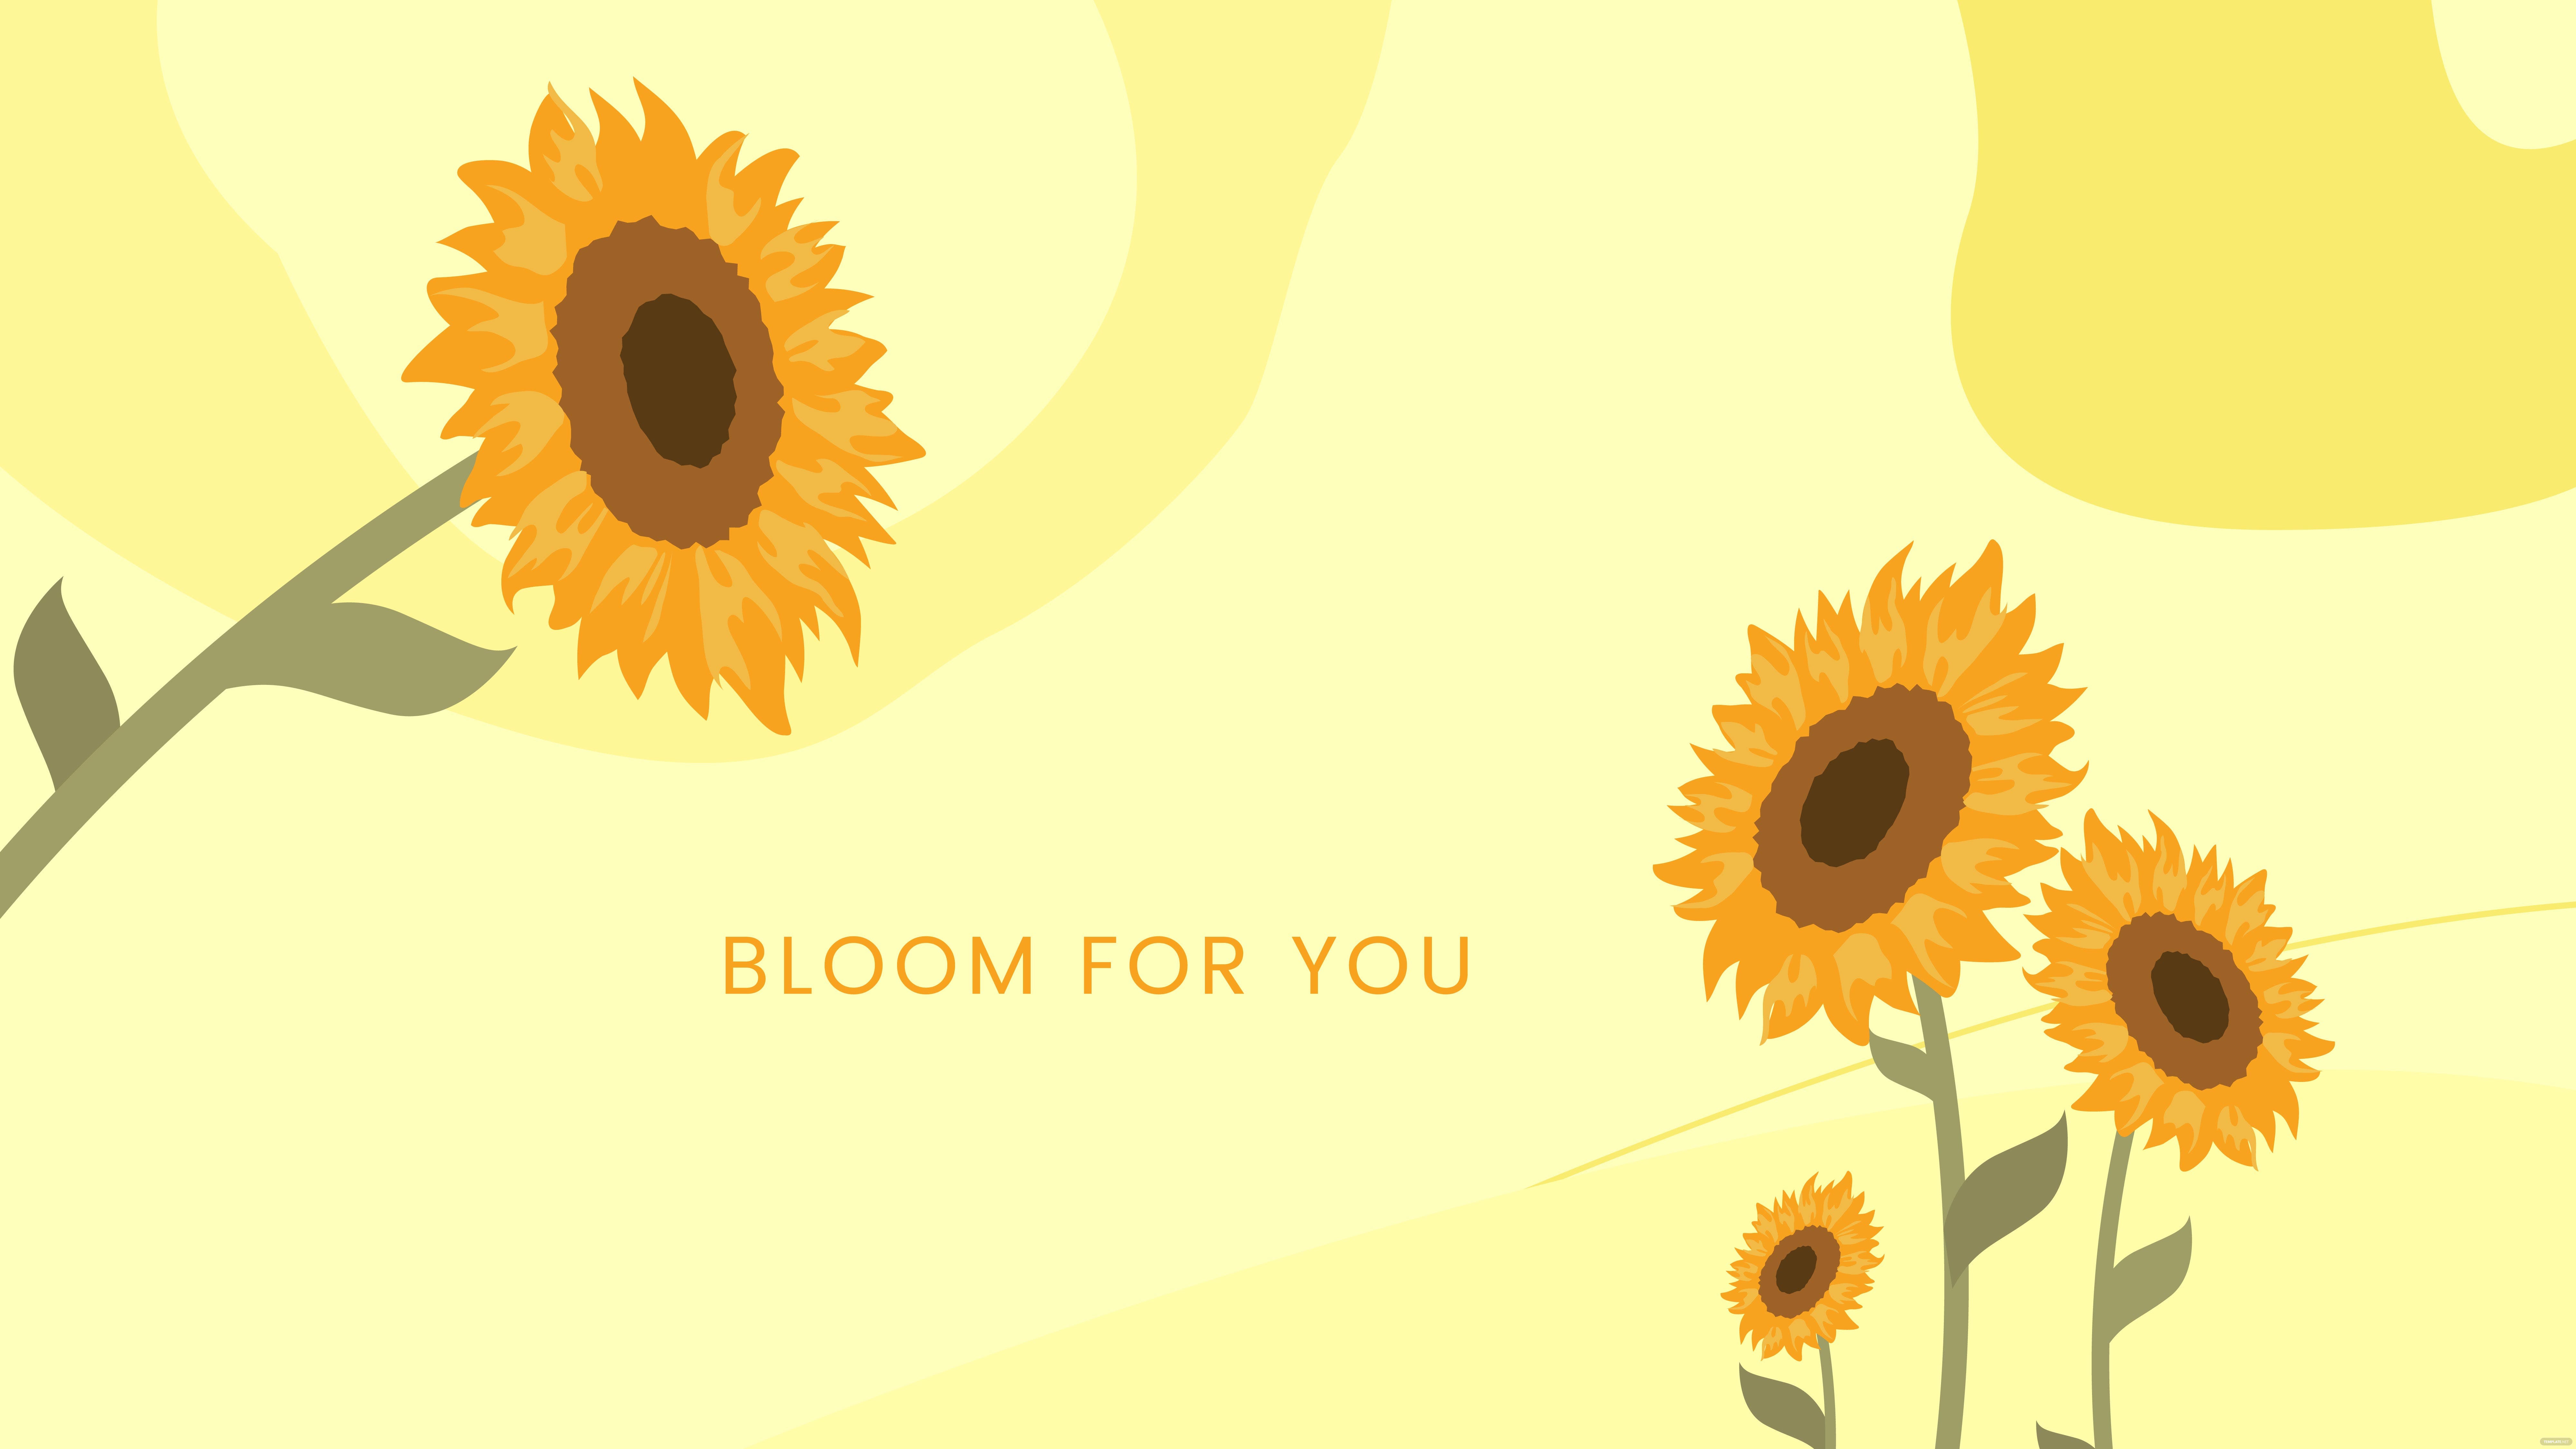 Free Sunflower Laptop Wallpaper, Illustrator, JPG, PNG, SVG